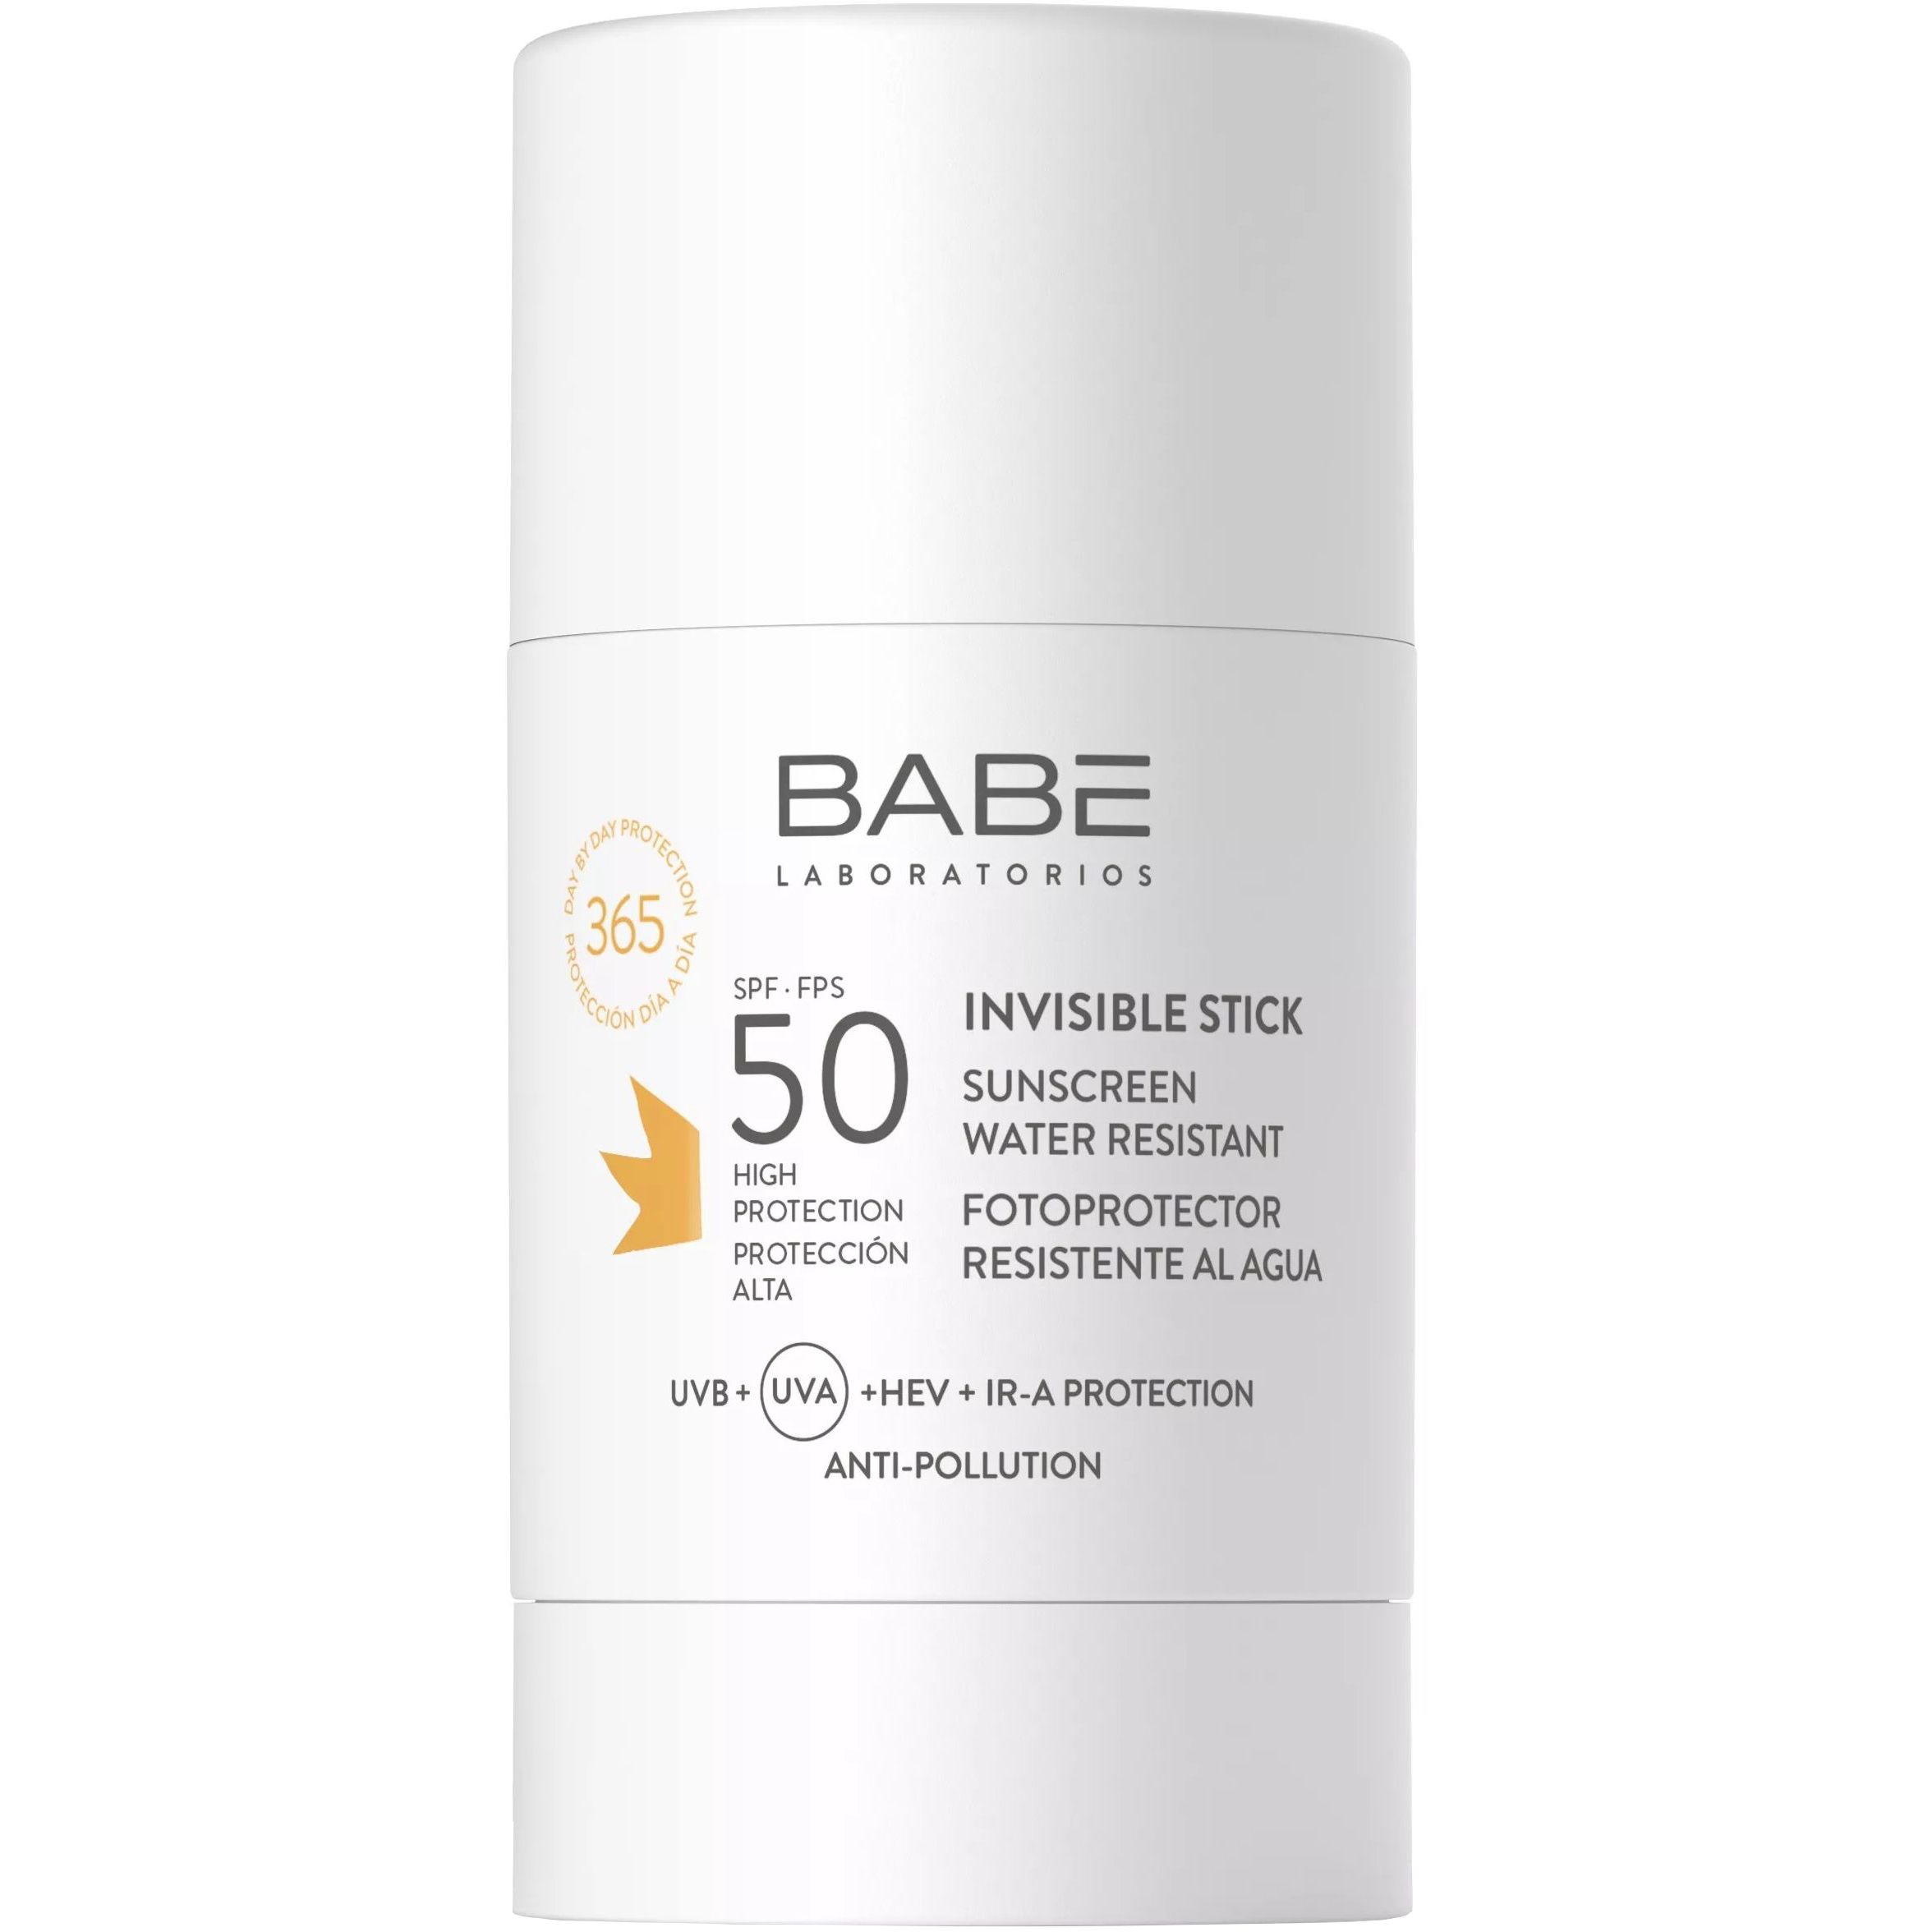 Солнцезащитный невидимый прозрачный сток Babe Laboratorios Sun Protection SPF 50 для лица и тела 50 мл - фото 1